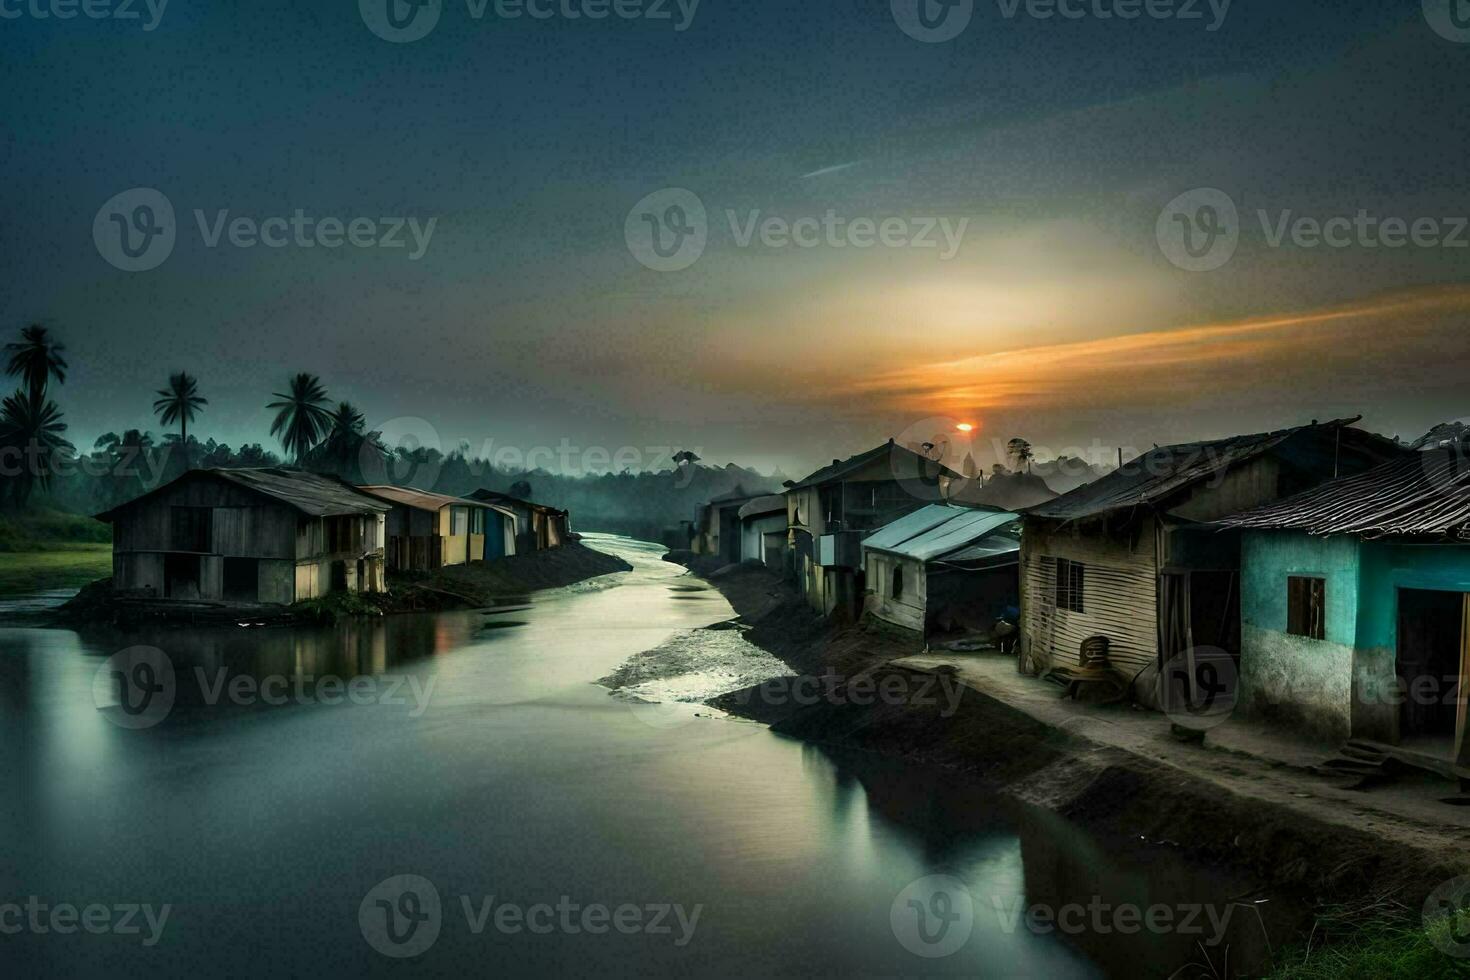 en flod kör genom en by på solnedgång. ai-genererad foto